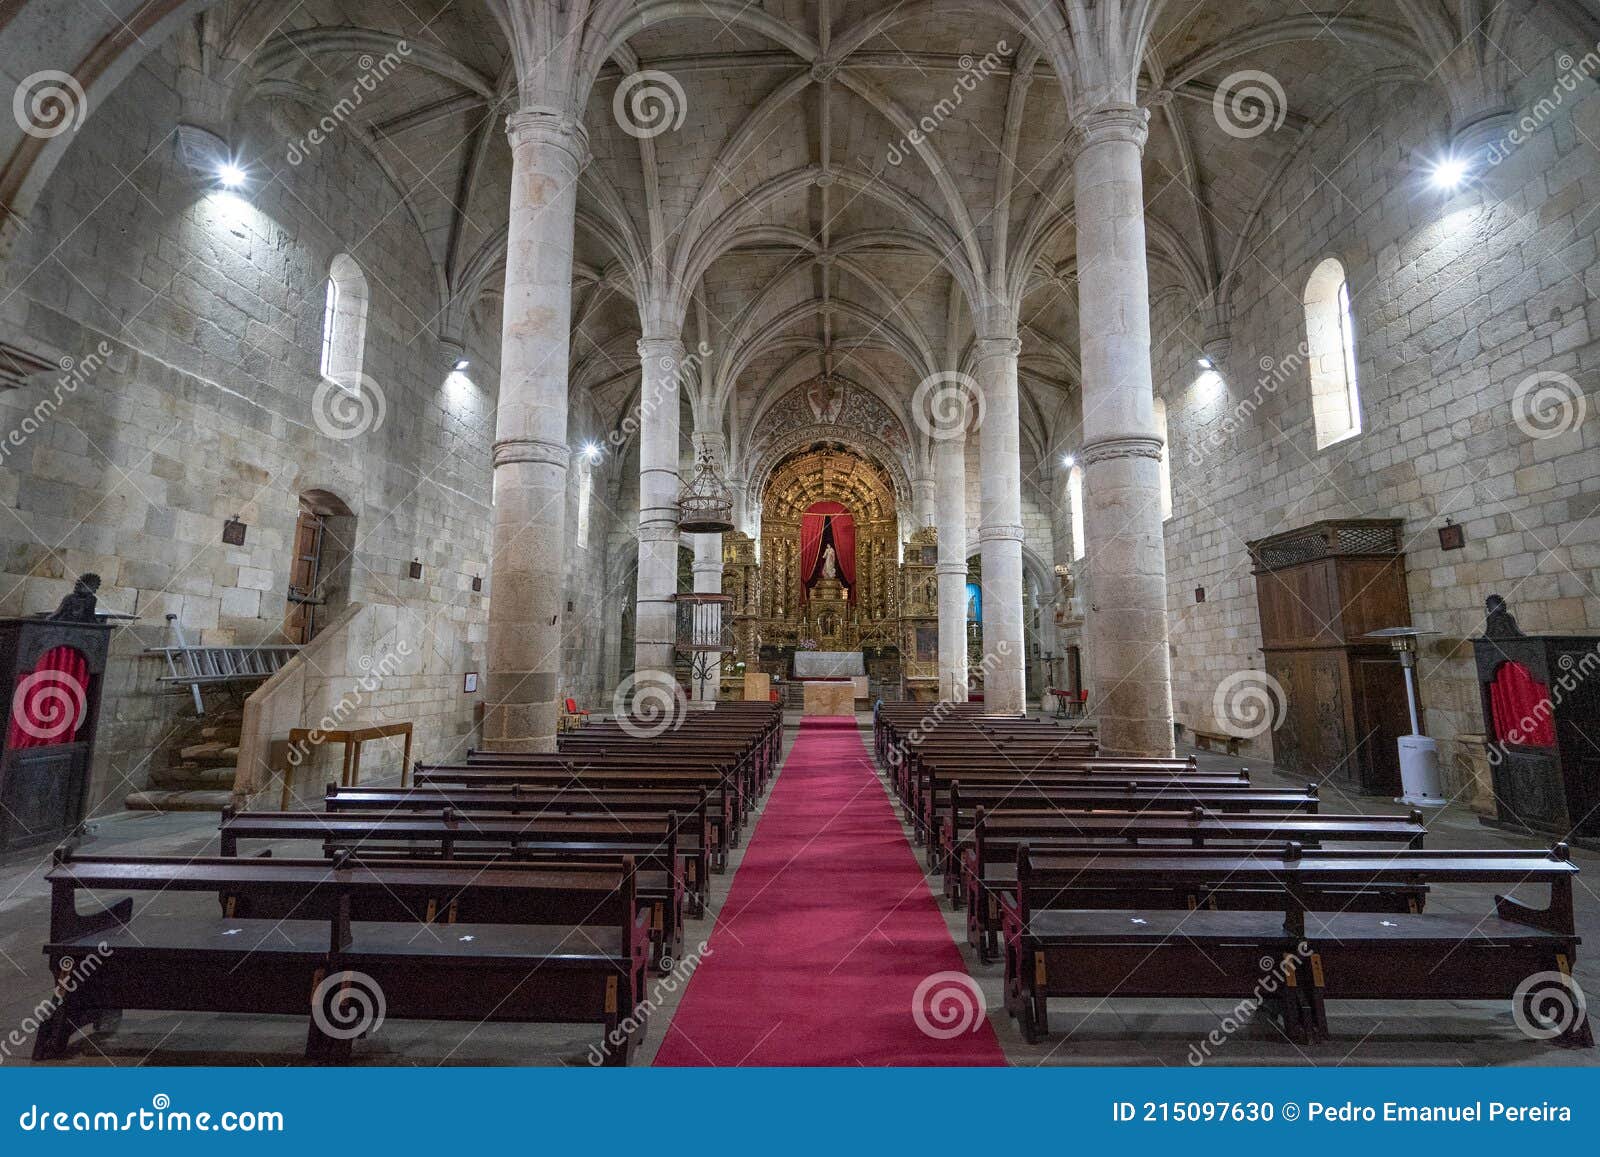 interior of the parish church of the locality of freixo de espada ÃÂ  cinta.  portugal